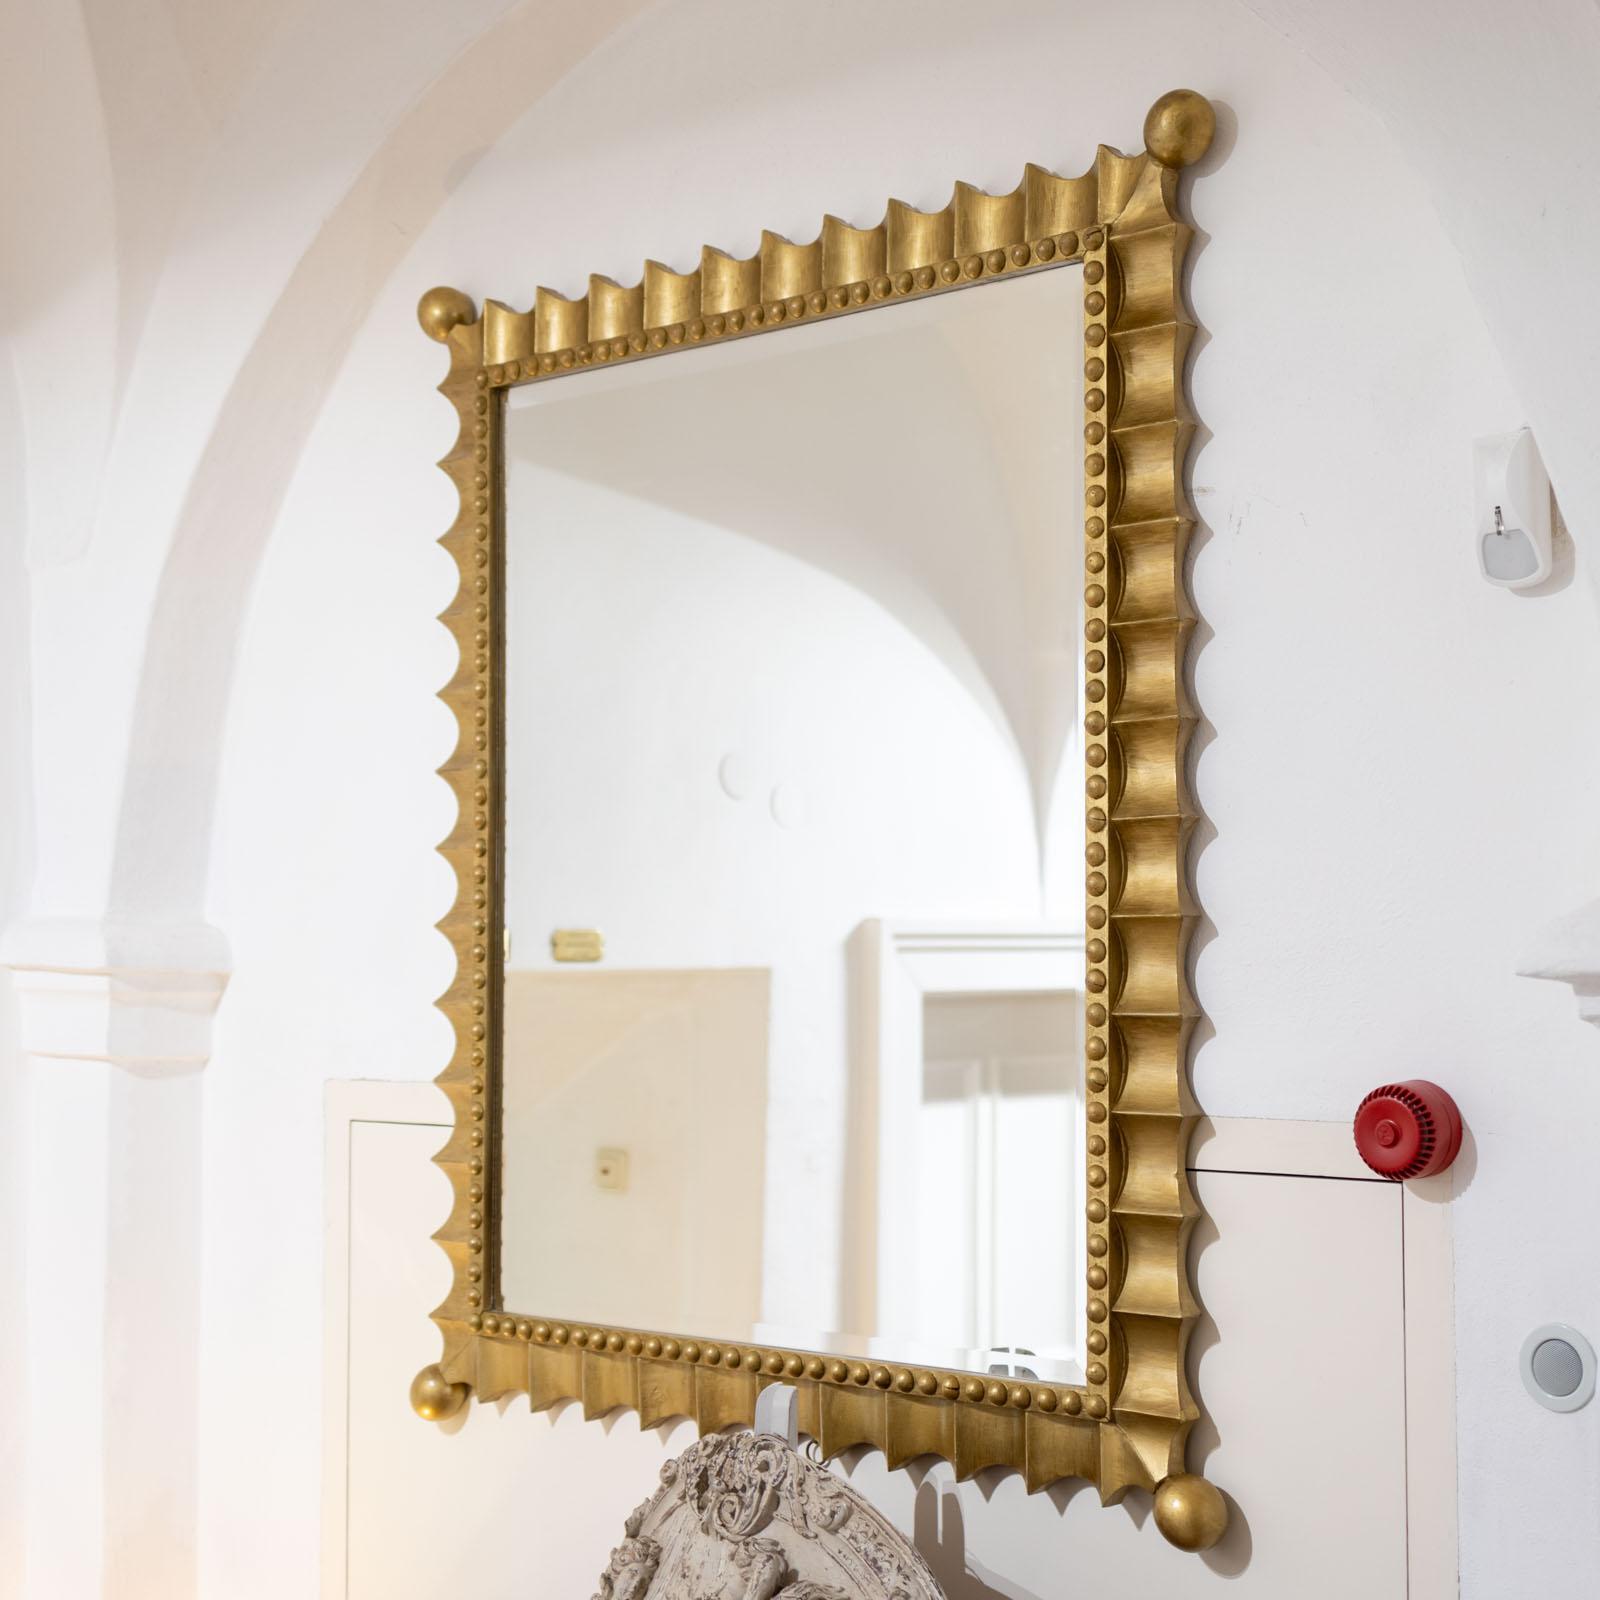 Großer Wandspiegel in einem goldpatinierten Rahmen mit gewelltem Rand und Perlendekor. Die Ecken enden in Kugeln. Die goldene Patina ist in gutem, leicht beriebenem Zustand.